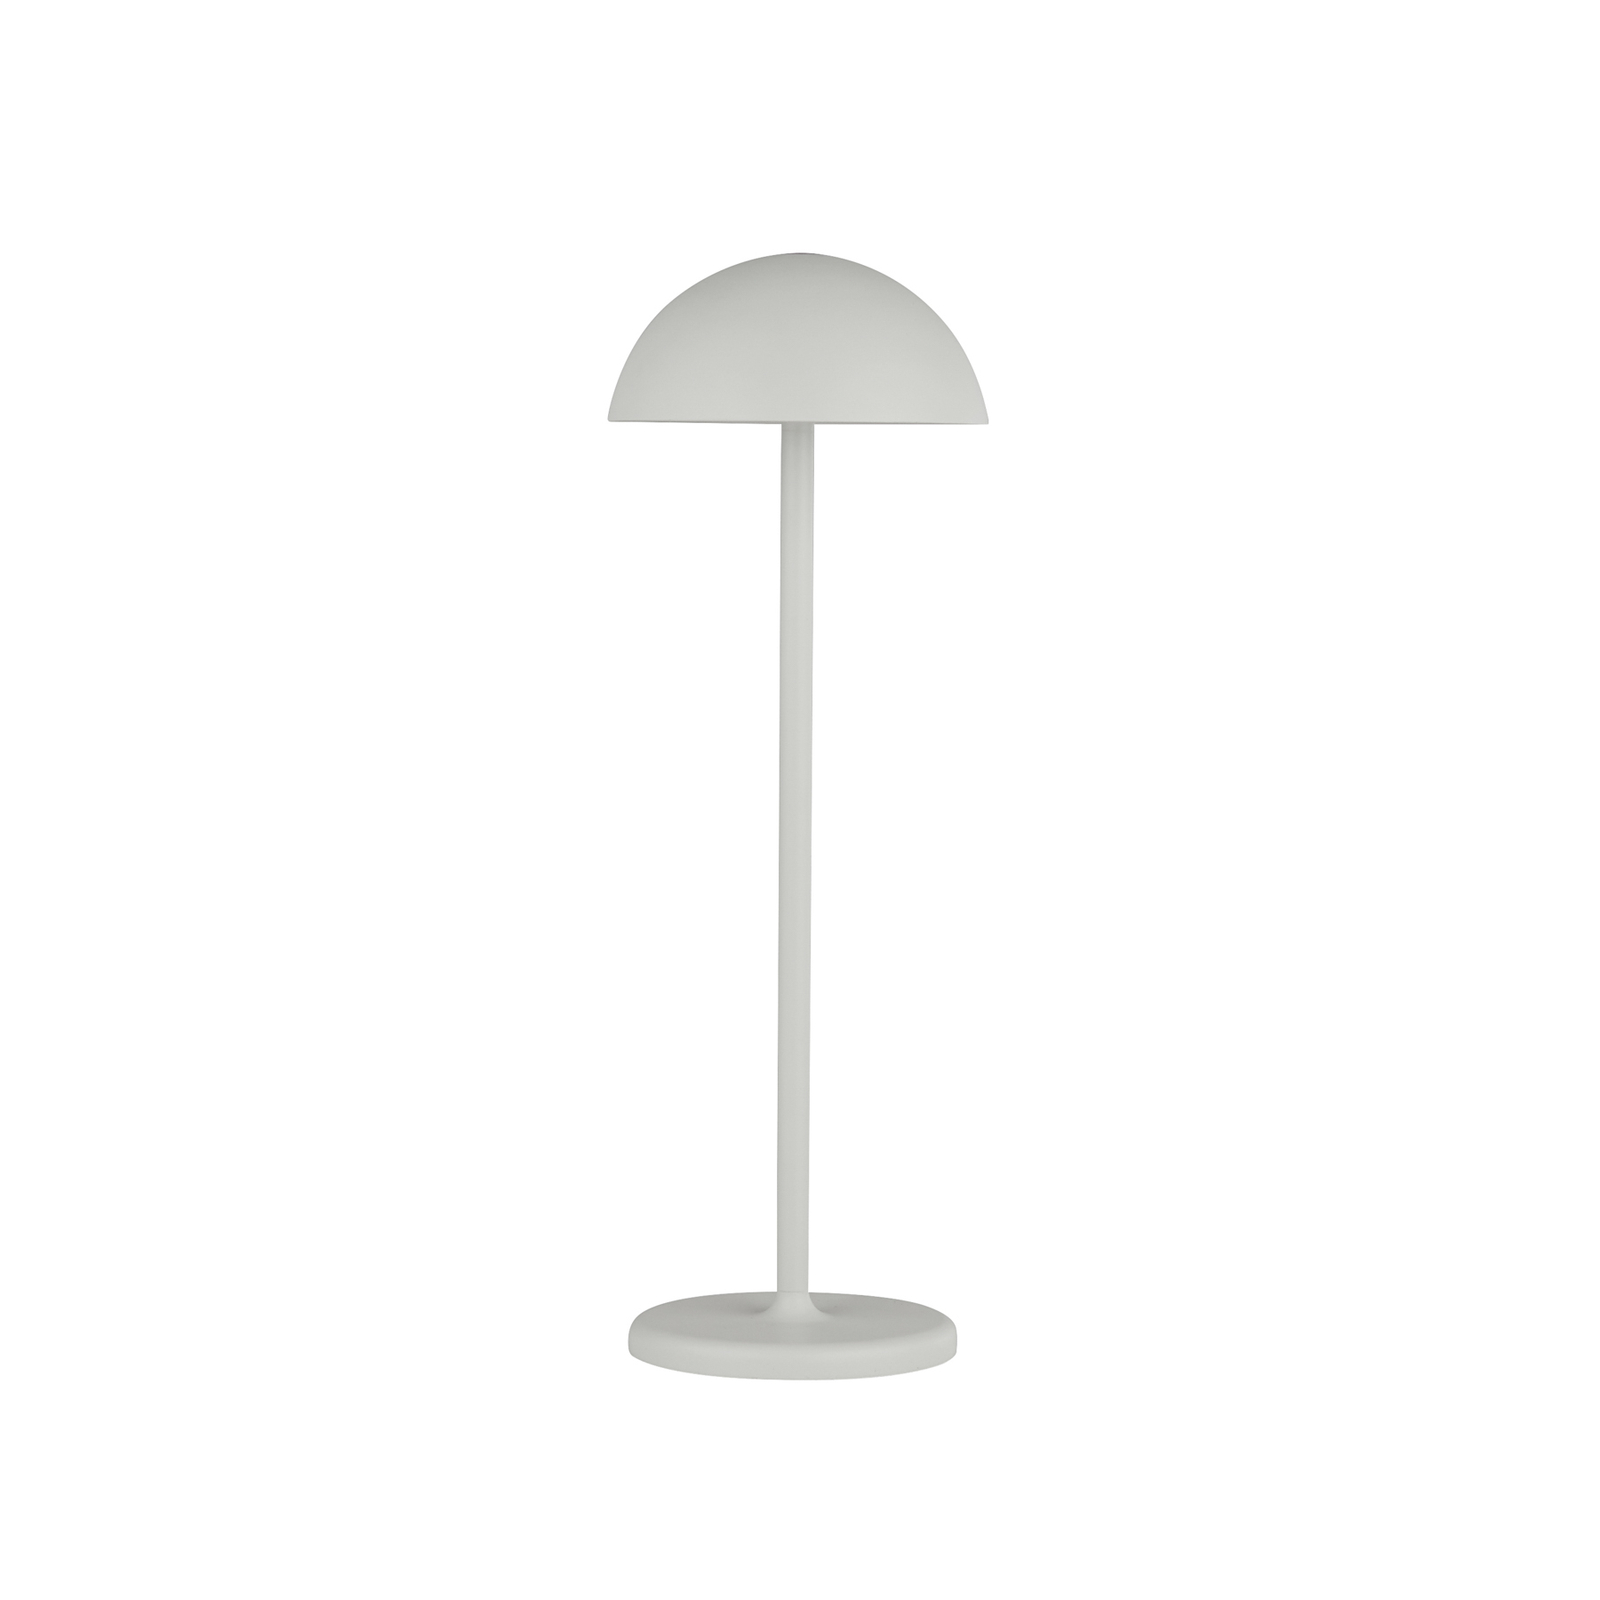 Mobile LED-Tischlampe Mushroom, USB-Ladeanschluss